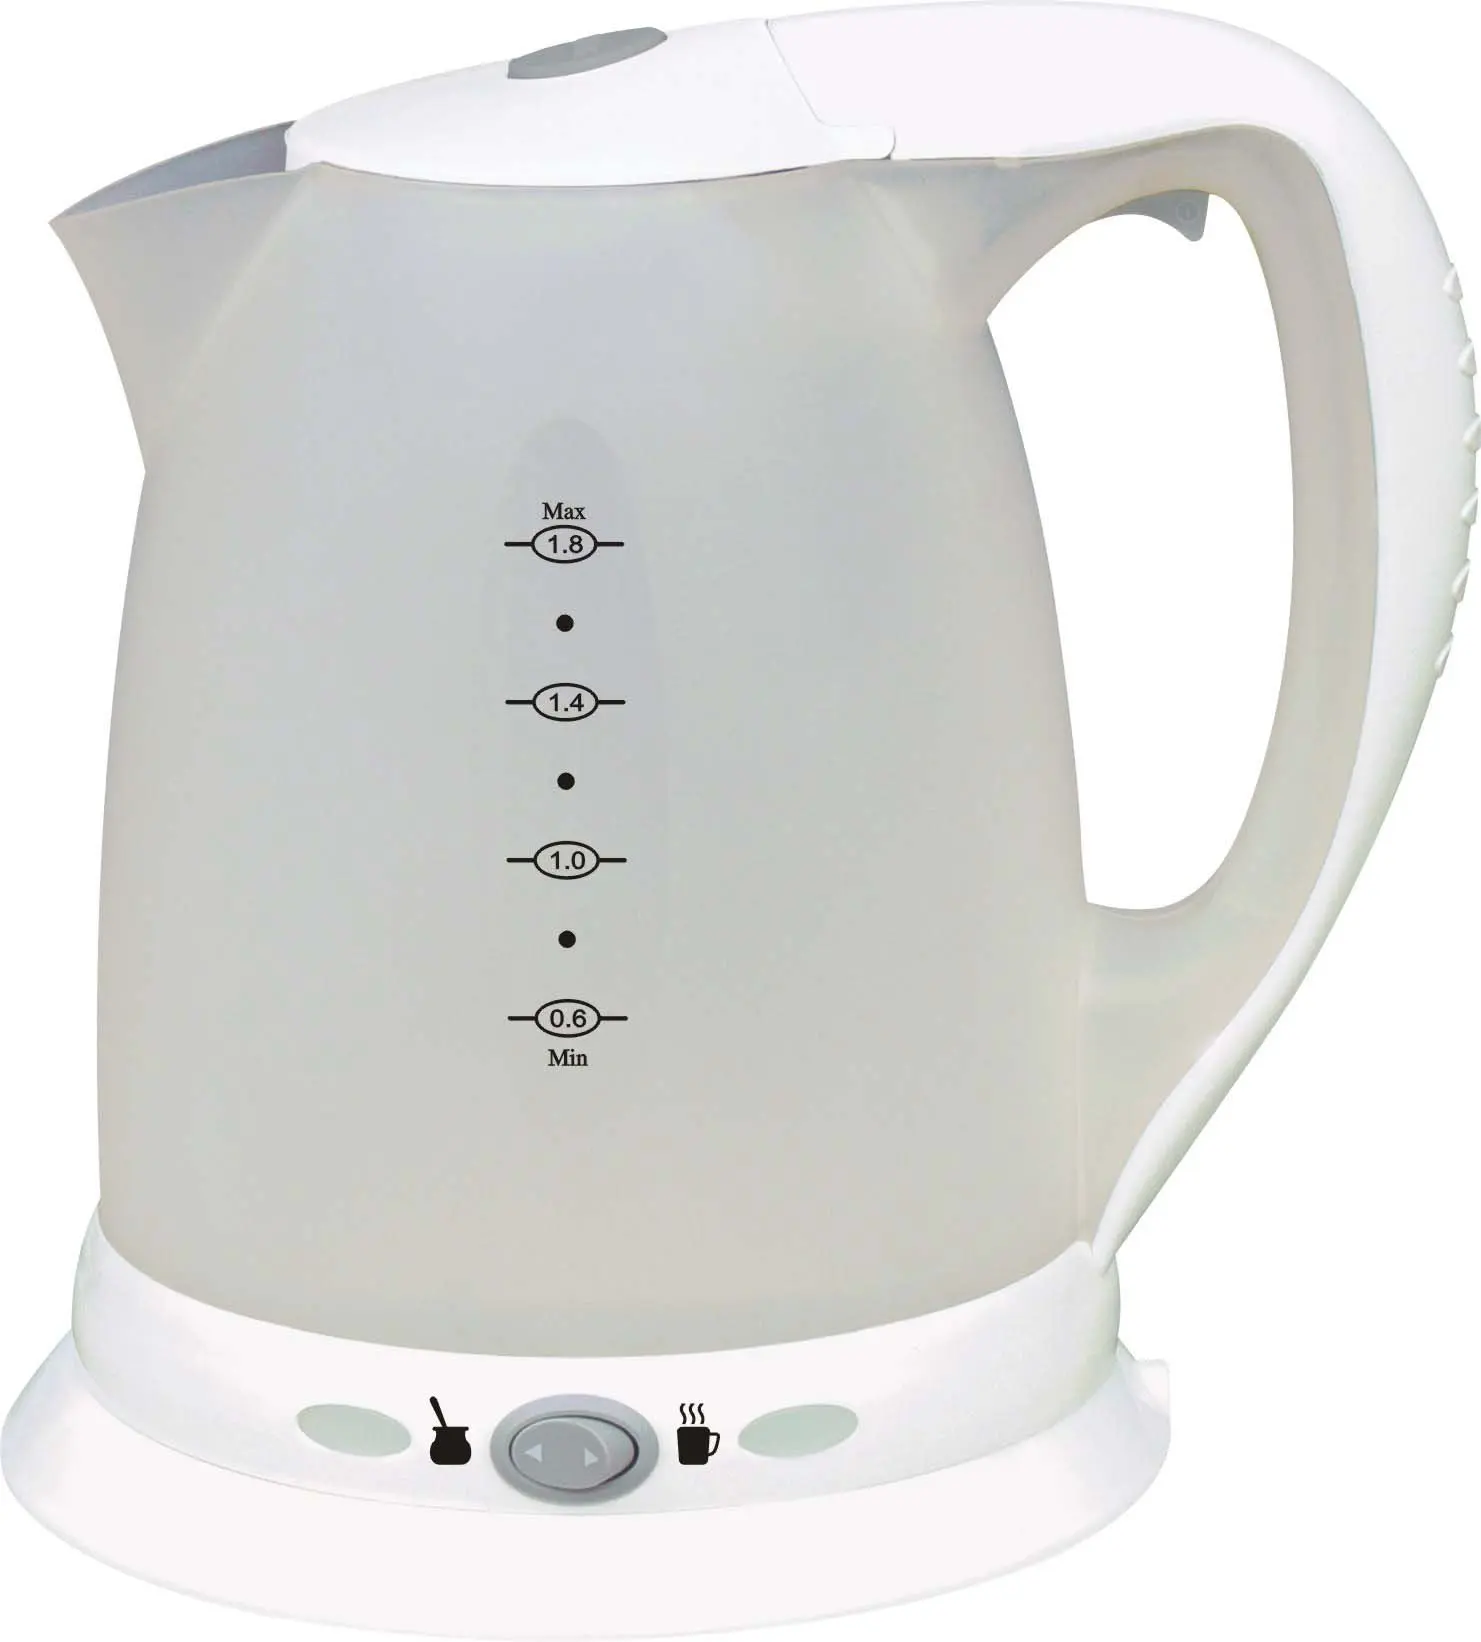 water heating jug